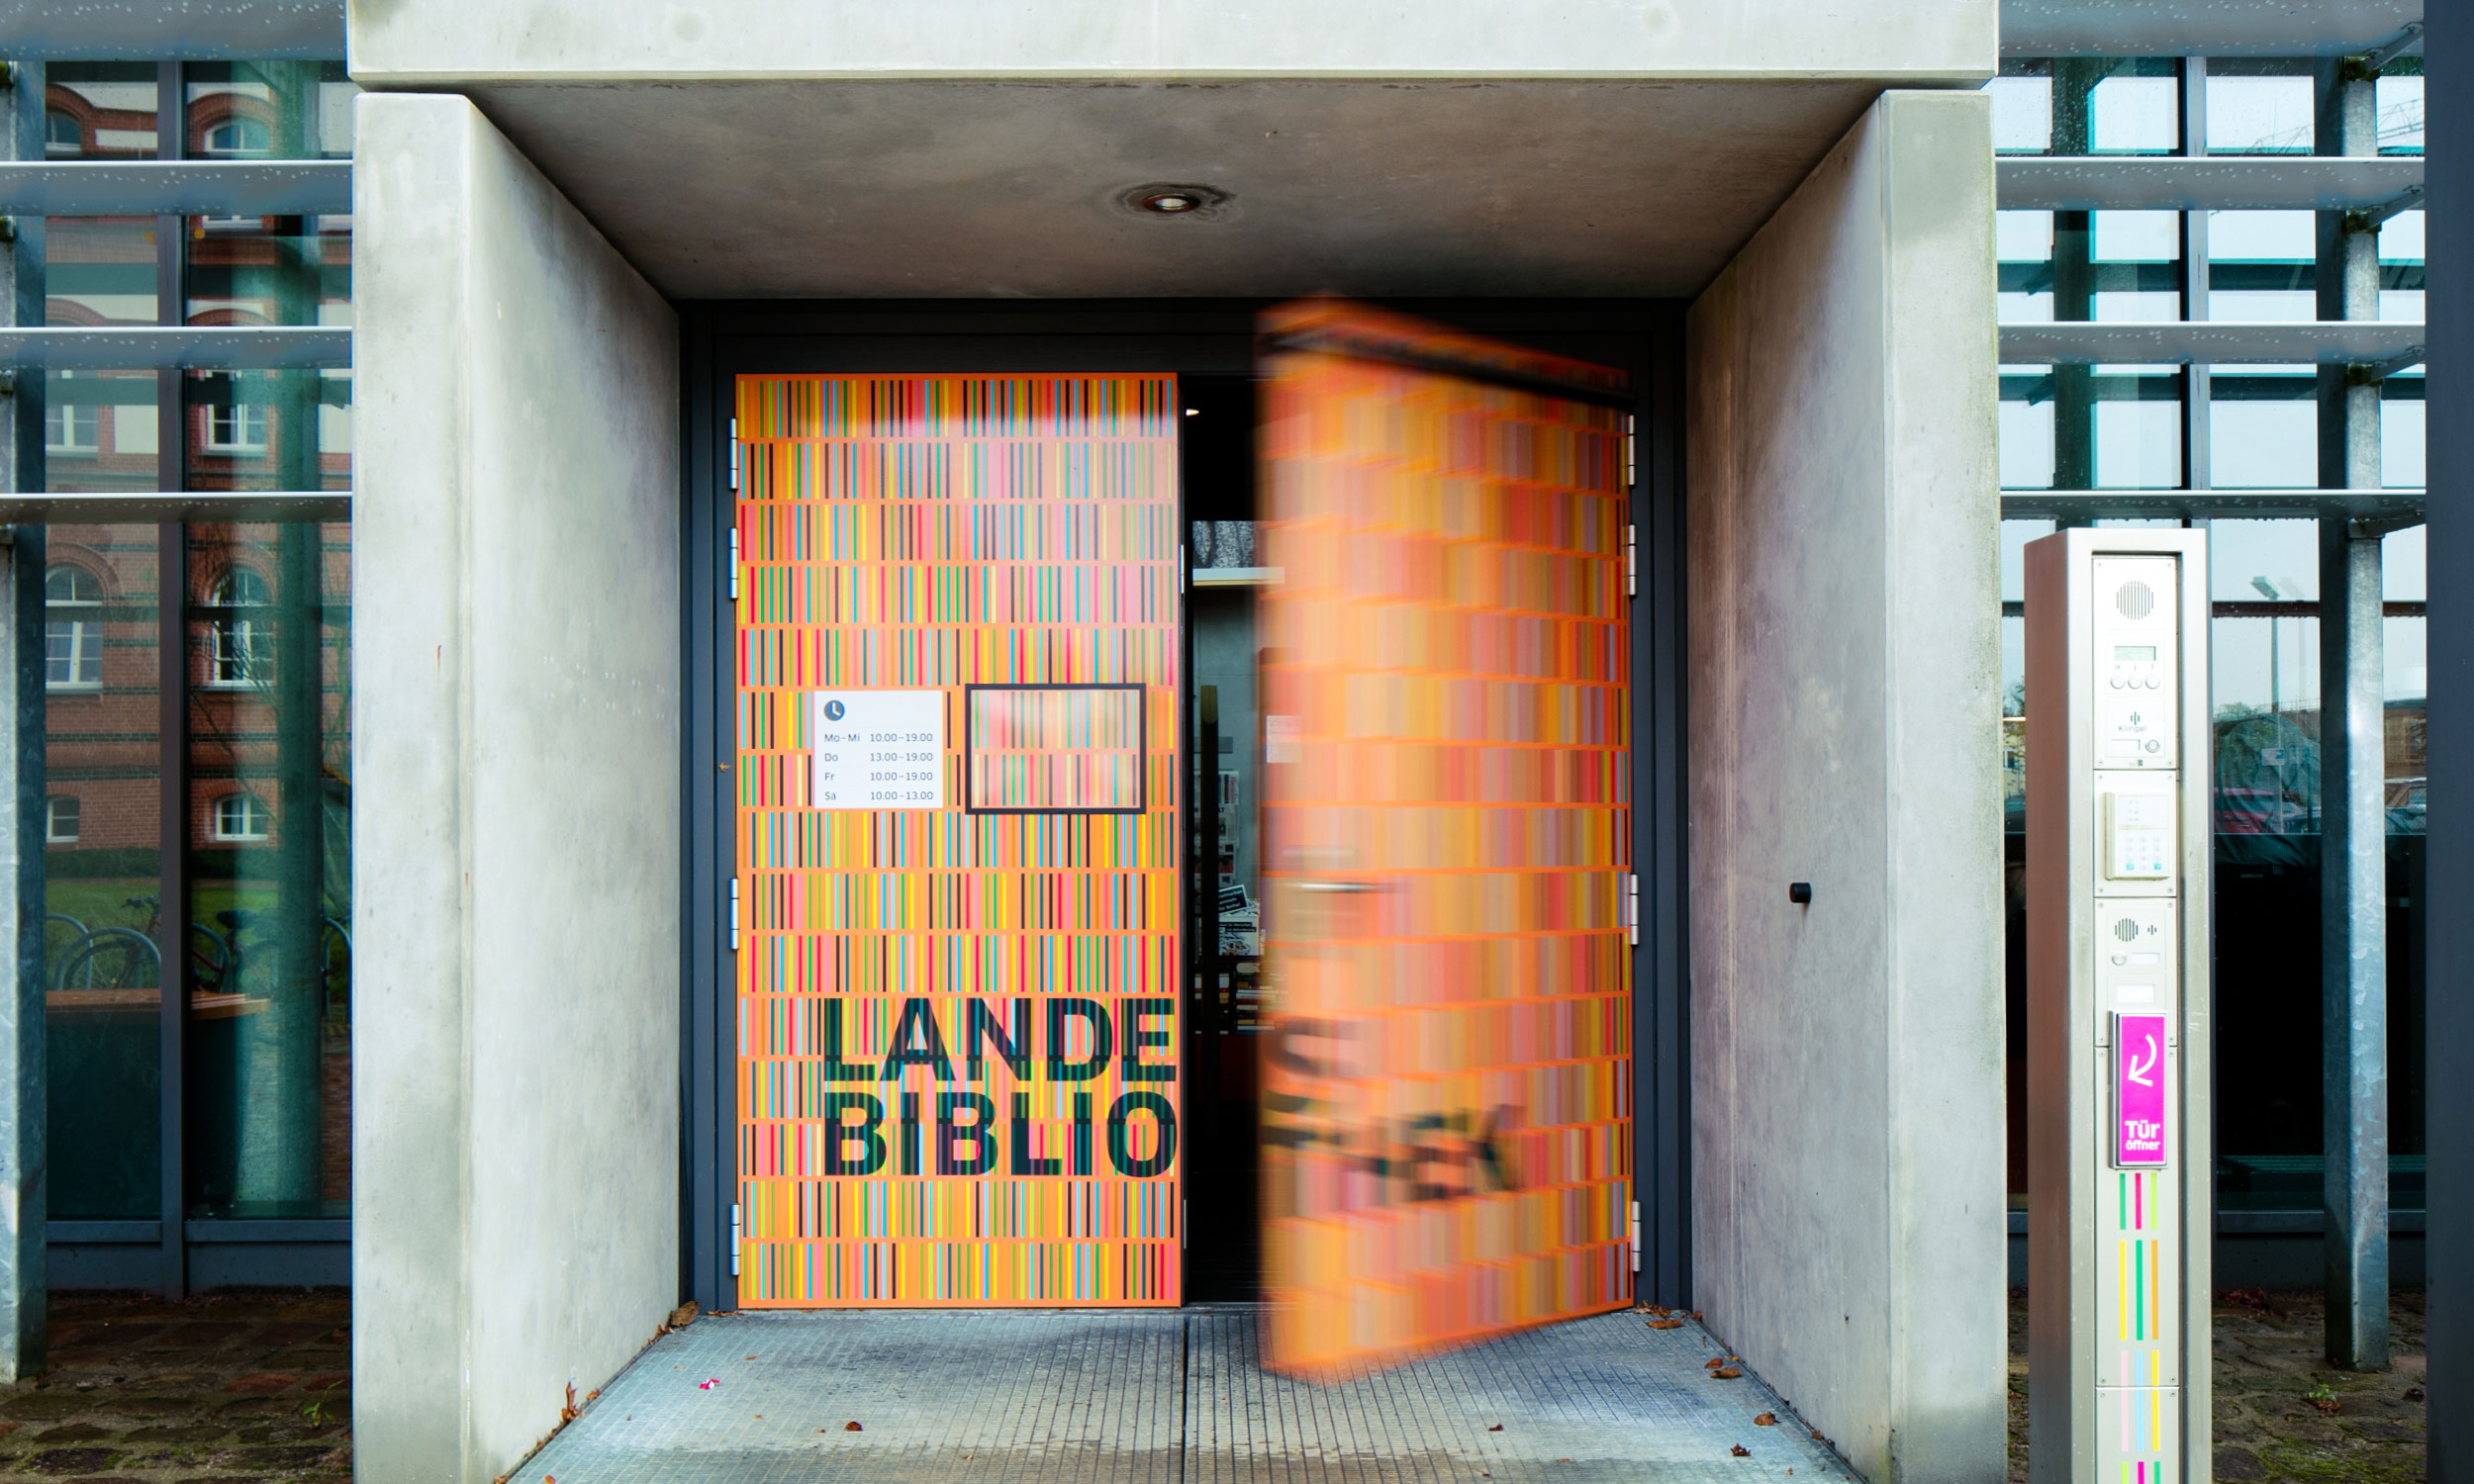 Foto der Haupteingangstür mit Beschriftung „Landesbibliothek“ und einer vollflächigen Gestaltung mit buntfarbigen Stäbchenelementen, die wichtiger Bestandteil der Leitsystems sind